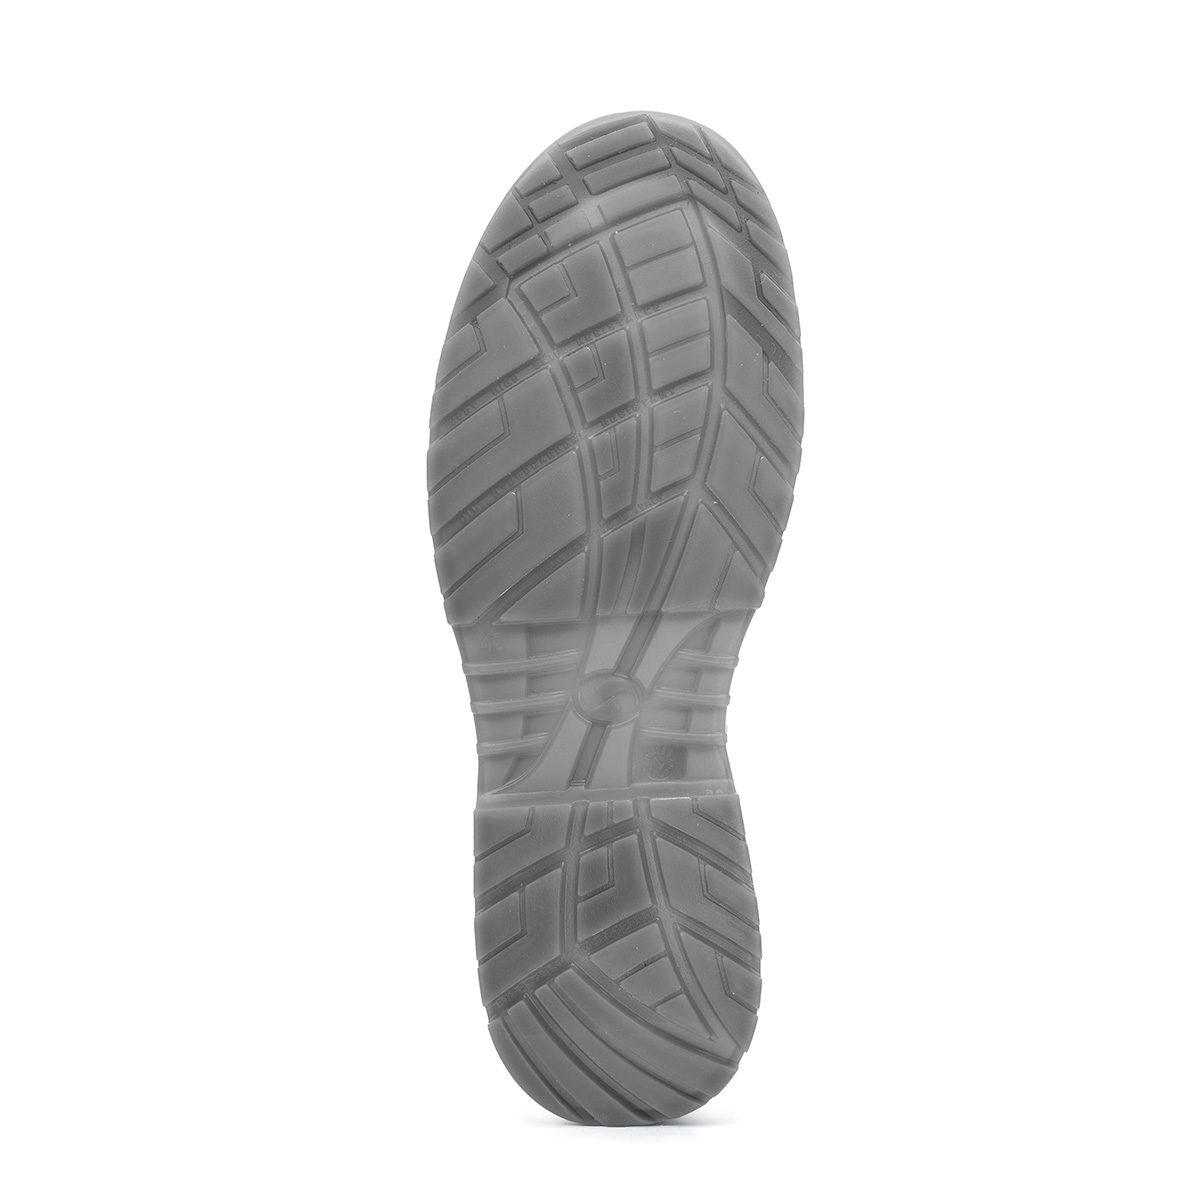 Crystal VENEZIA - Low Shoe con classe di protezione S2 *CI SRC - Codice  modello 86203-00 Sixton Peak Safety Shoes